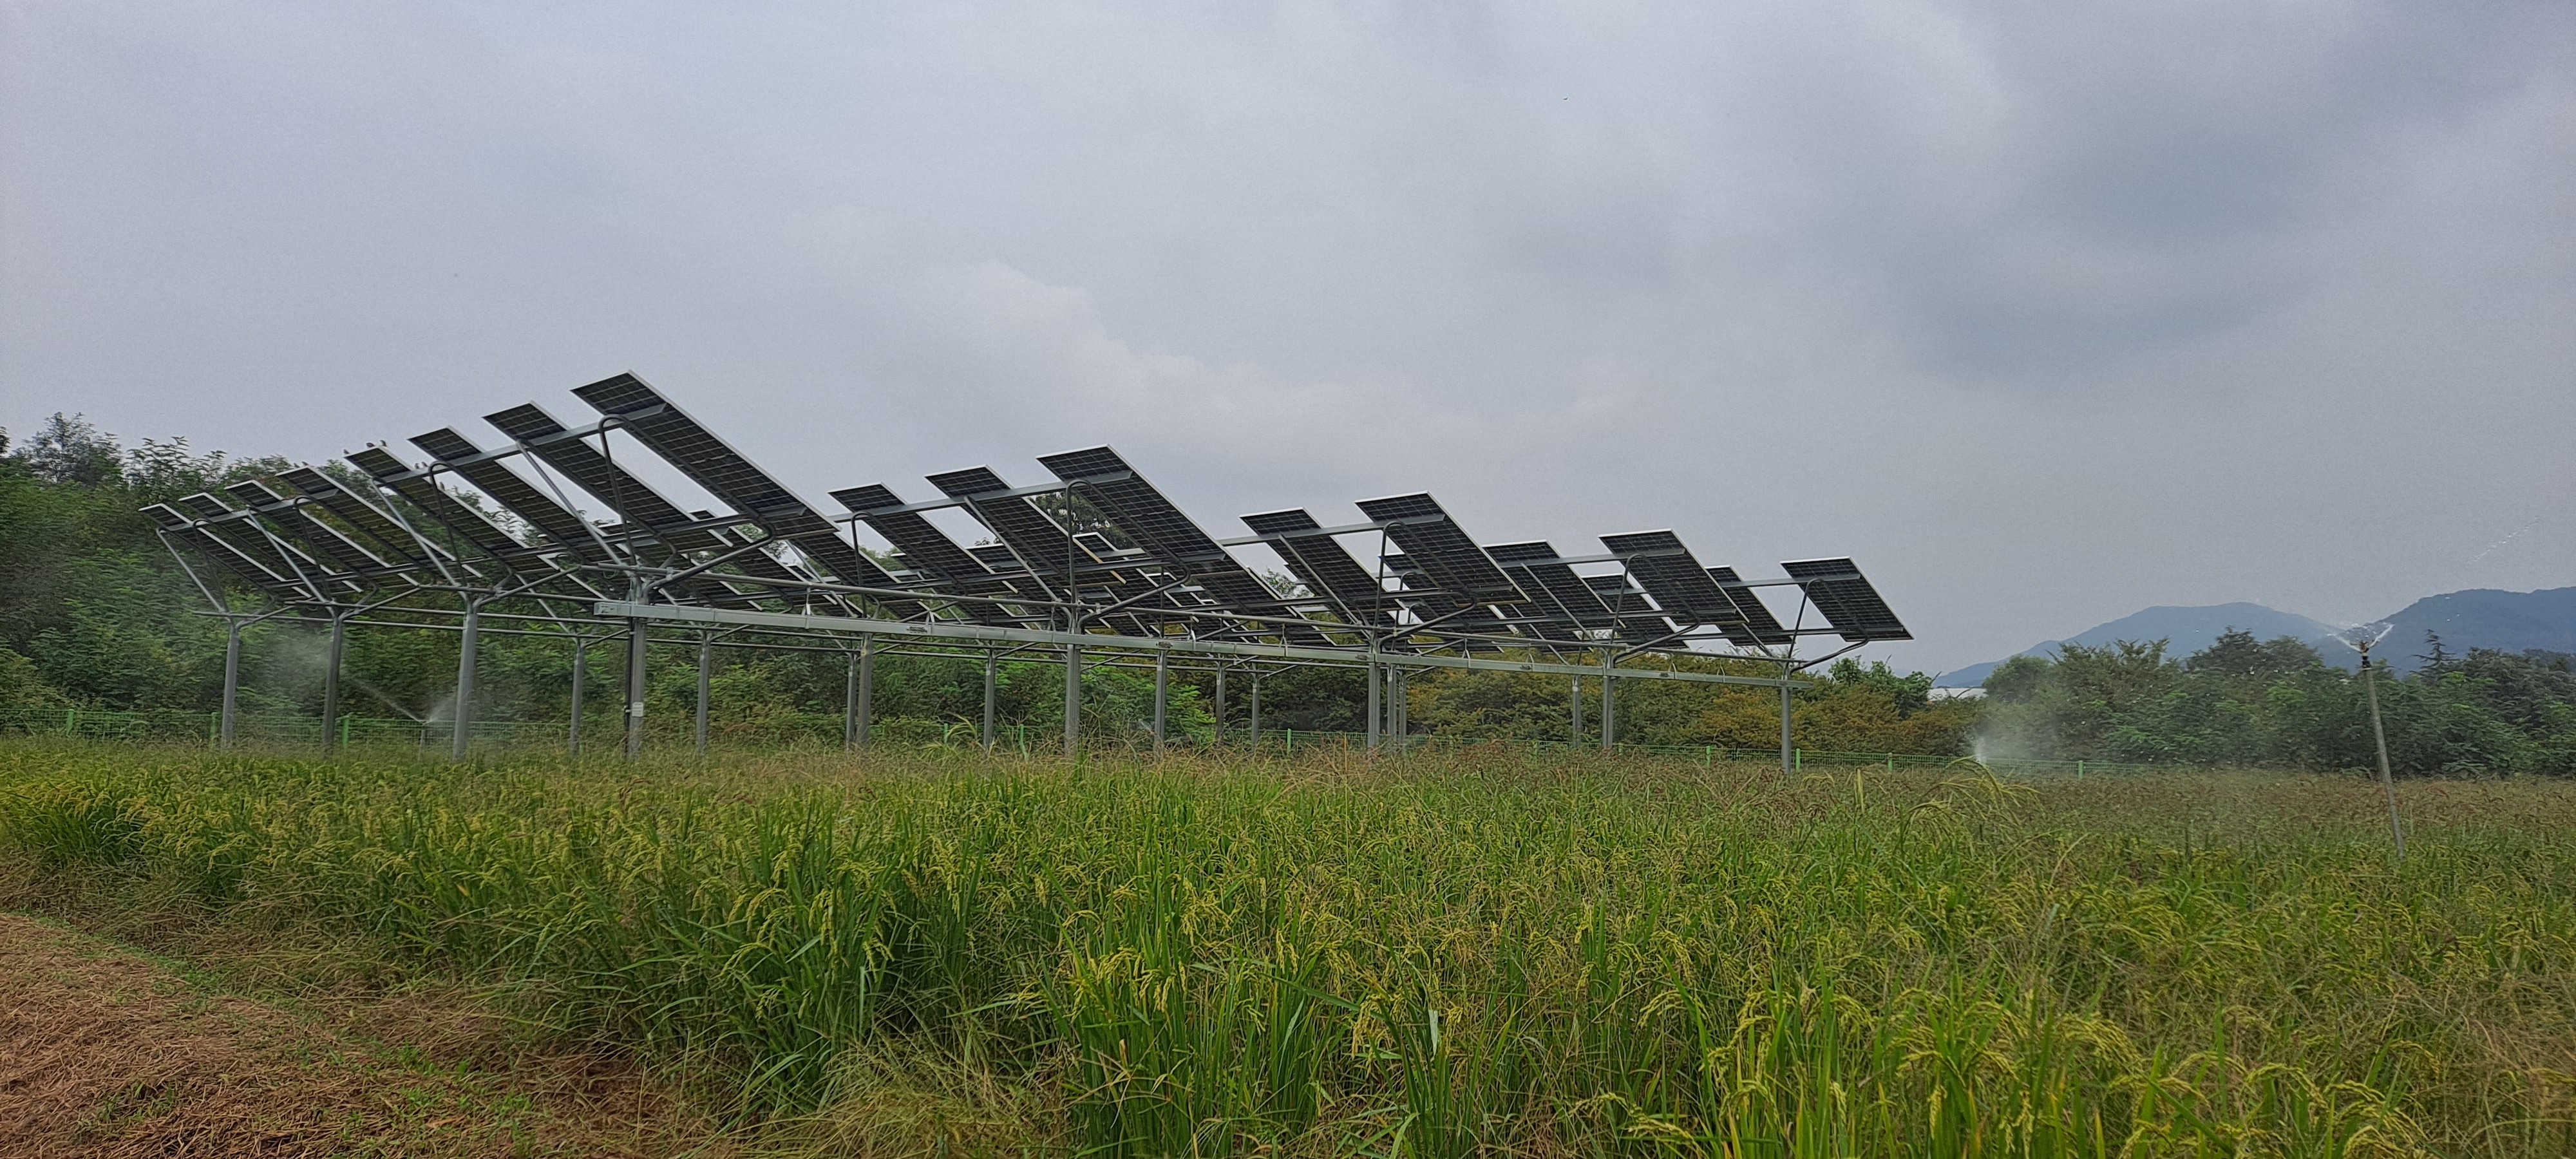 영남대 영농형태양광 실증단지에  설치된 영농형 태양광 전용 협소형 모듈. 그 아래에는 벼가 재배되고 있다.